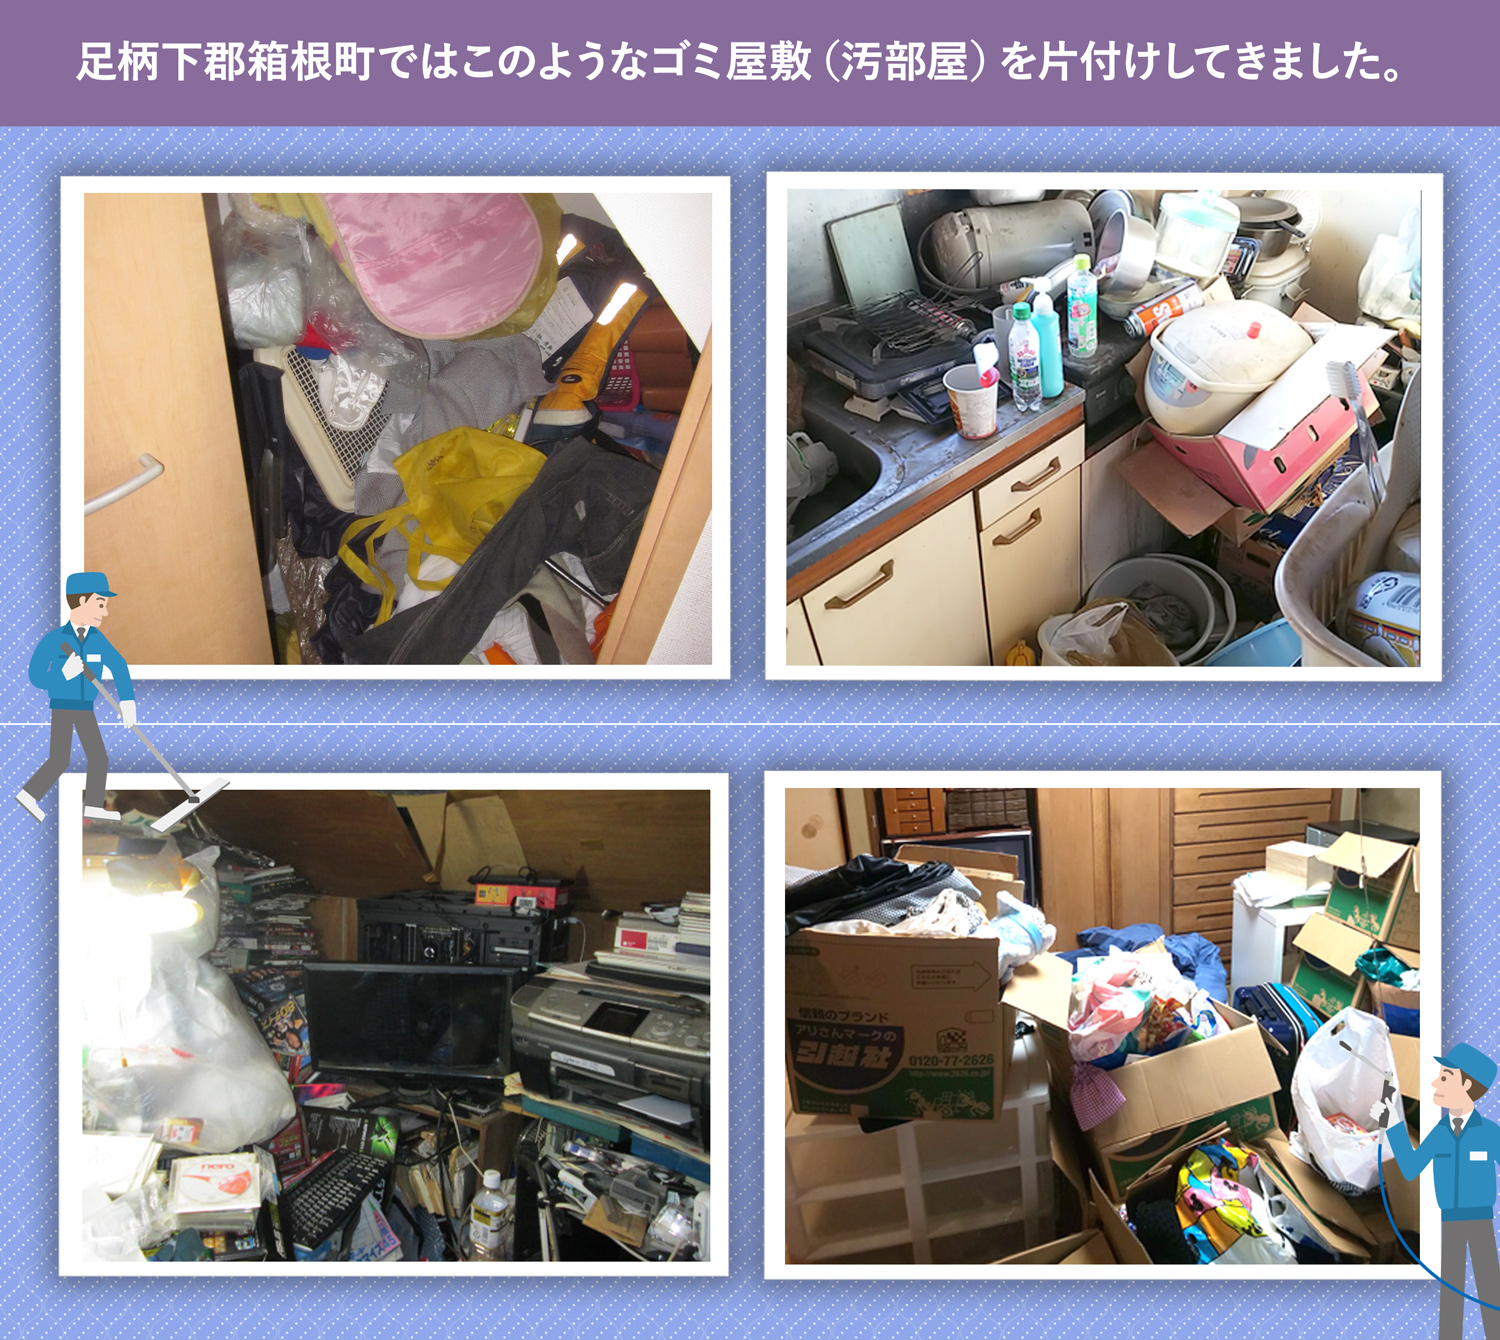 足柄下郡箱根町で行ったで行ったごみ屋敷・汚部屋の片付けの一例